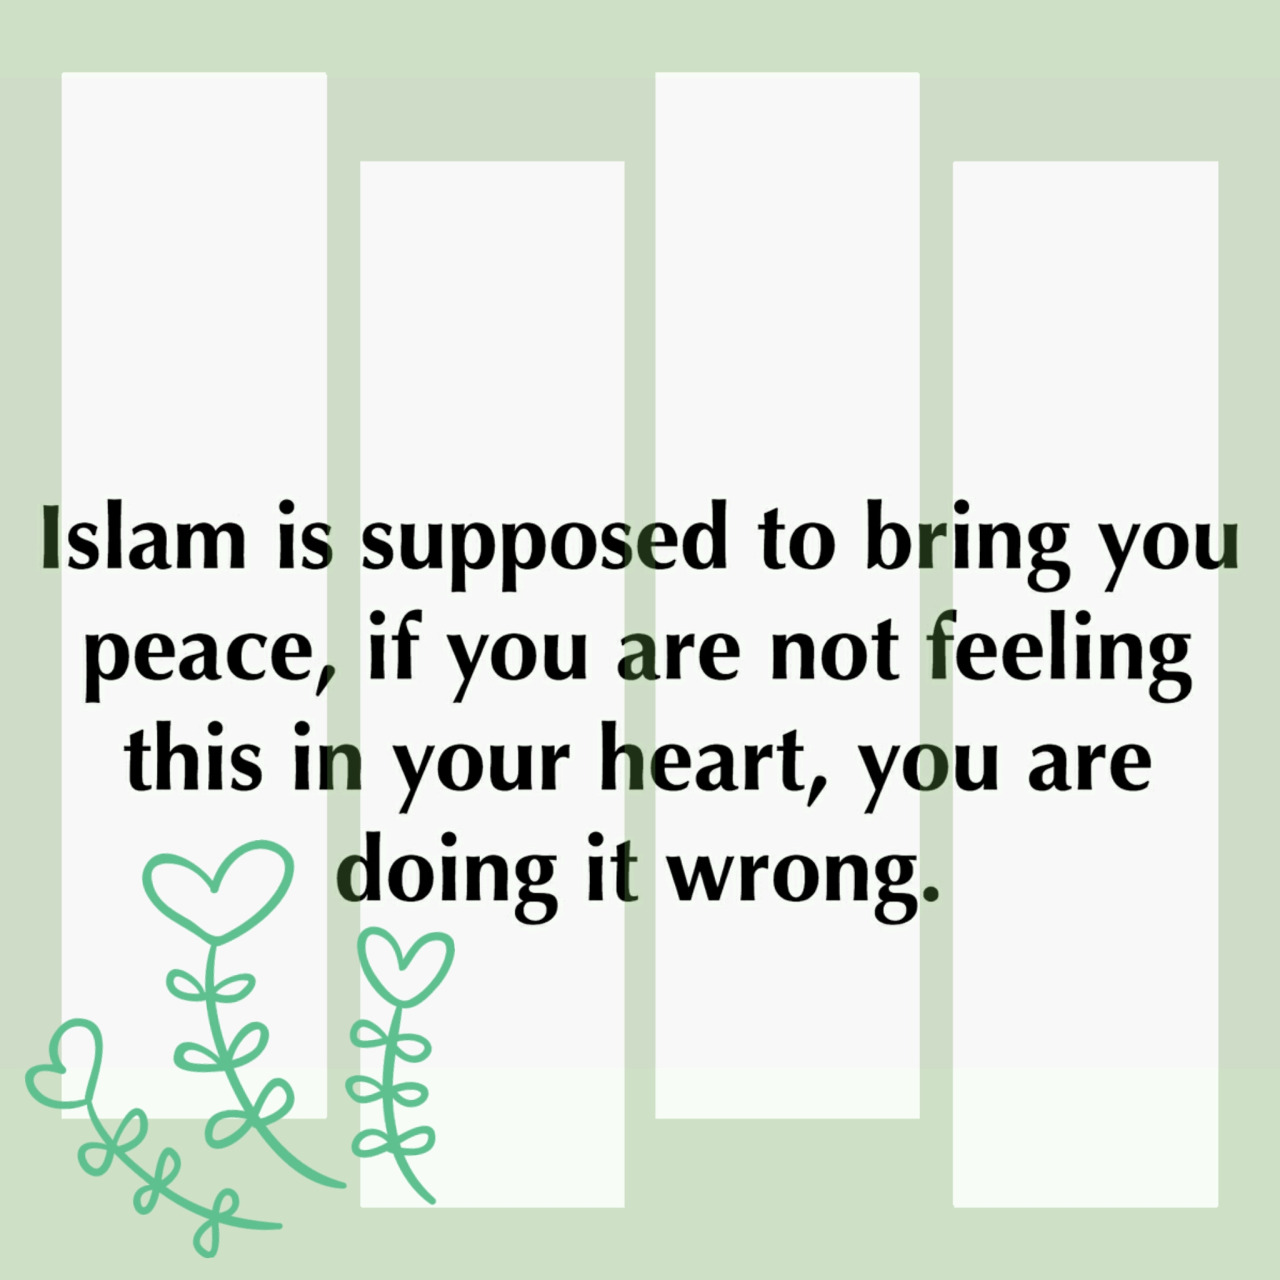 Islam brings peace